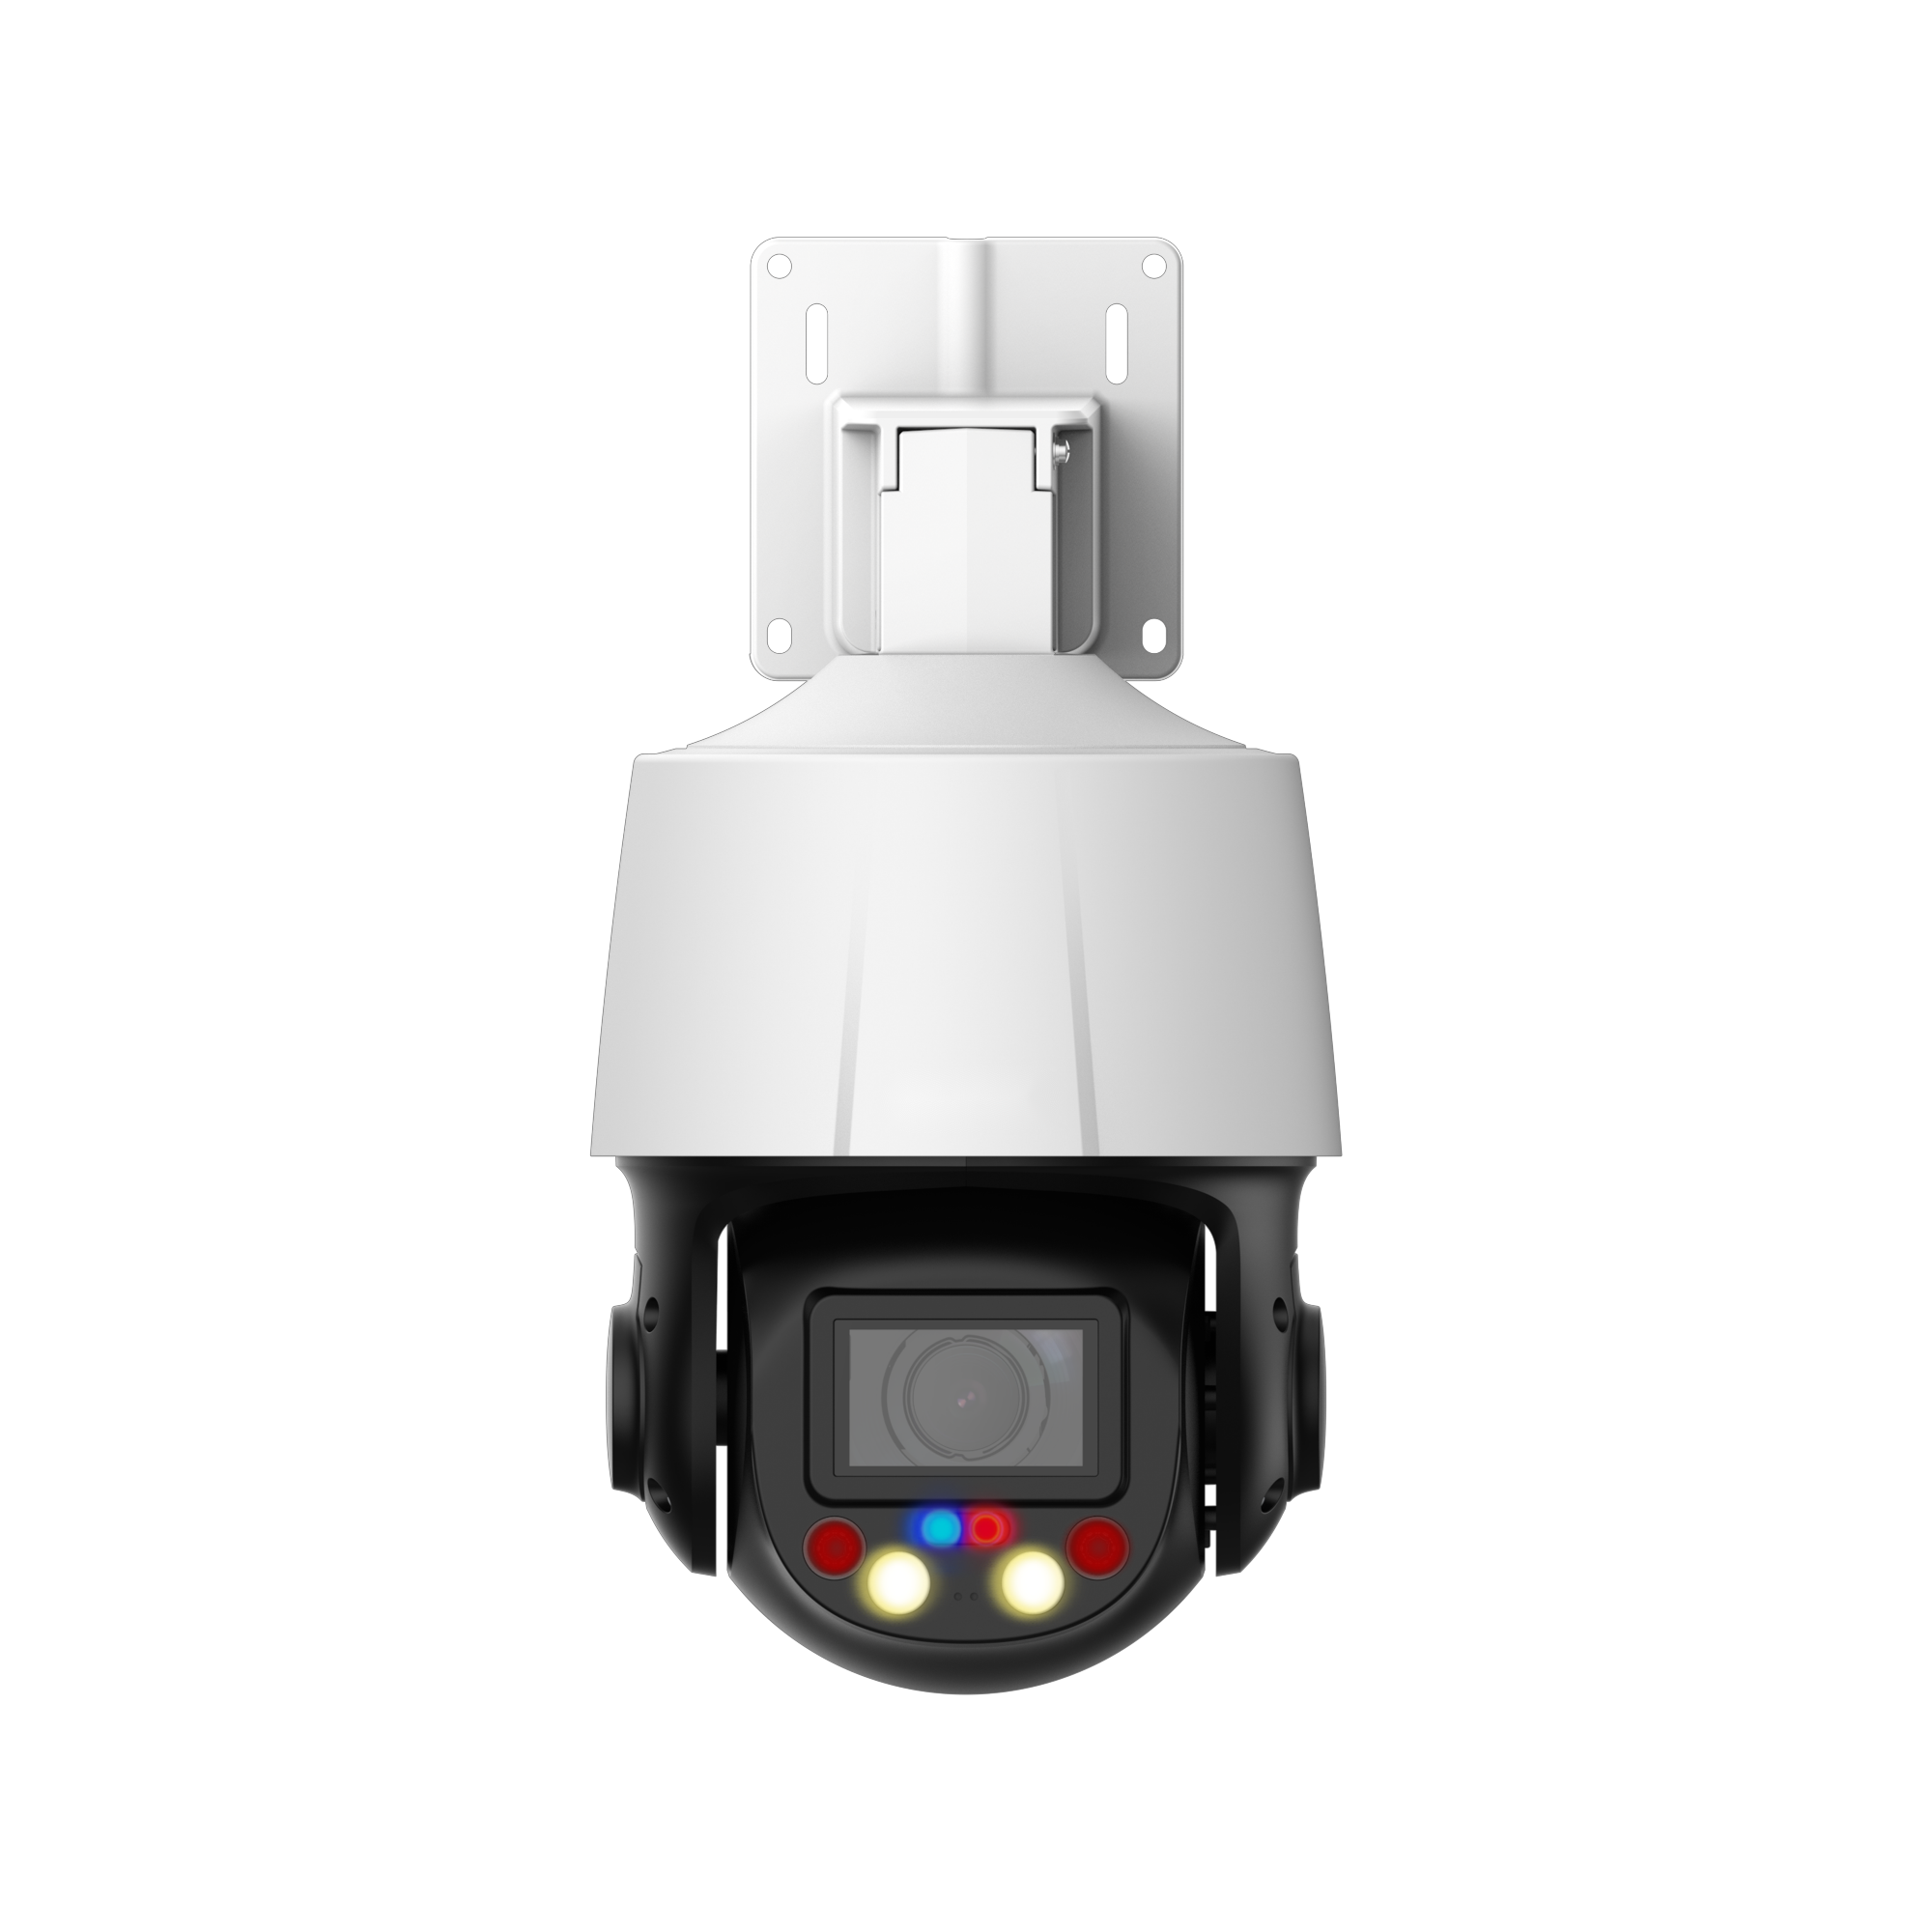 EmpireTech PTZ3E405-AI 1/2.8"CMOS 4MP 5x Network PTZ Camera Support Two-way Talk Built-in 2 IR, 2 Warm light, 1 Red light, 1 Blue light - EmpireTech